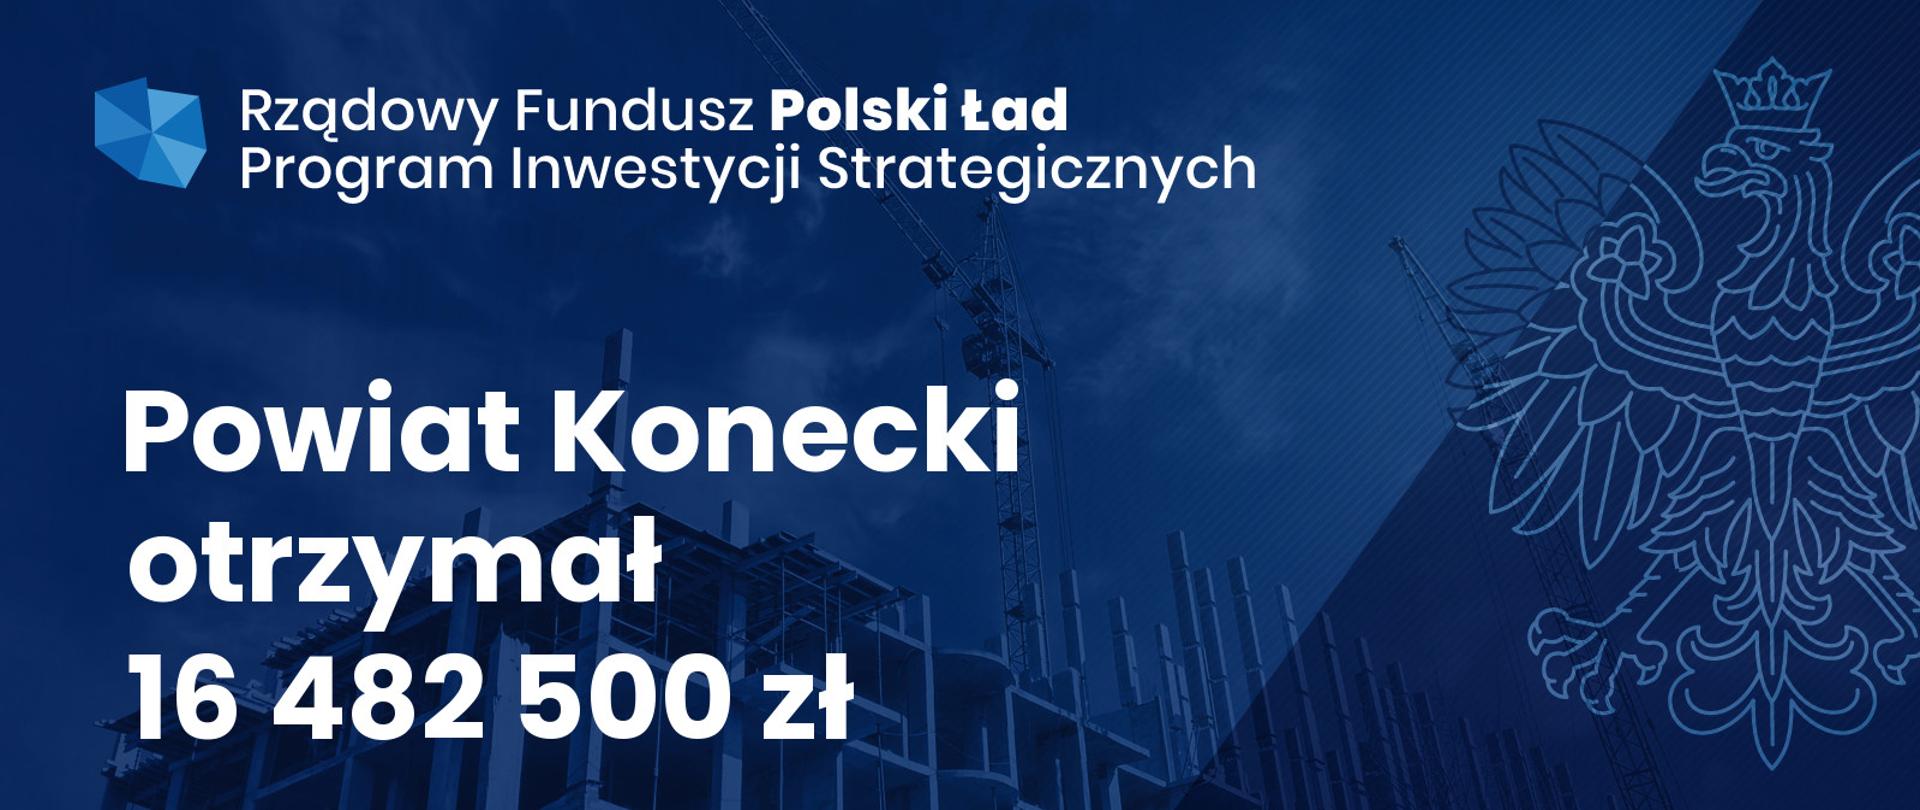 Grafika Polski Ład dla powiatu koneckiego